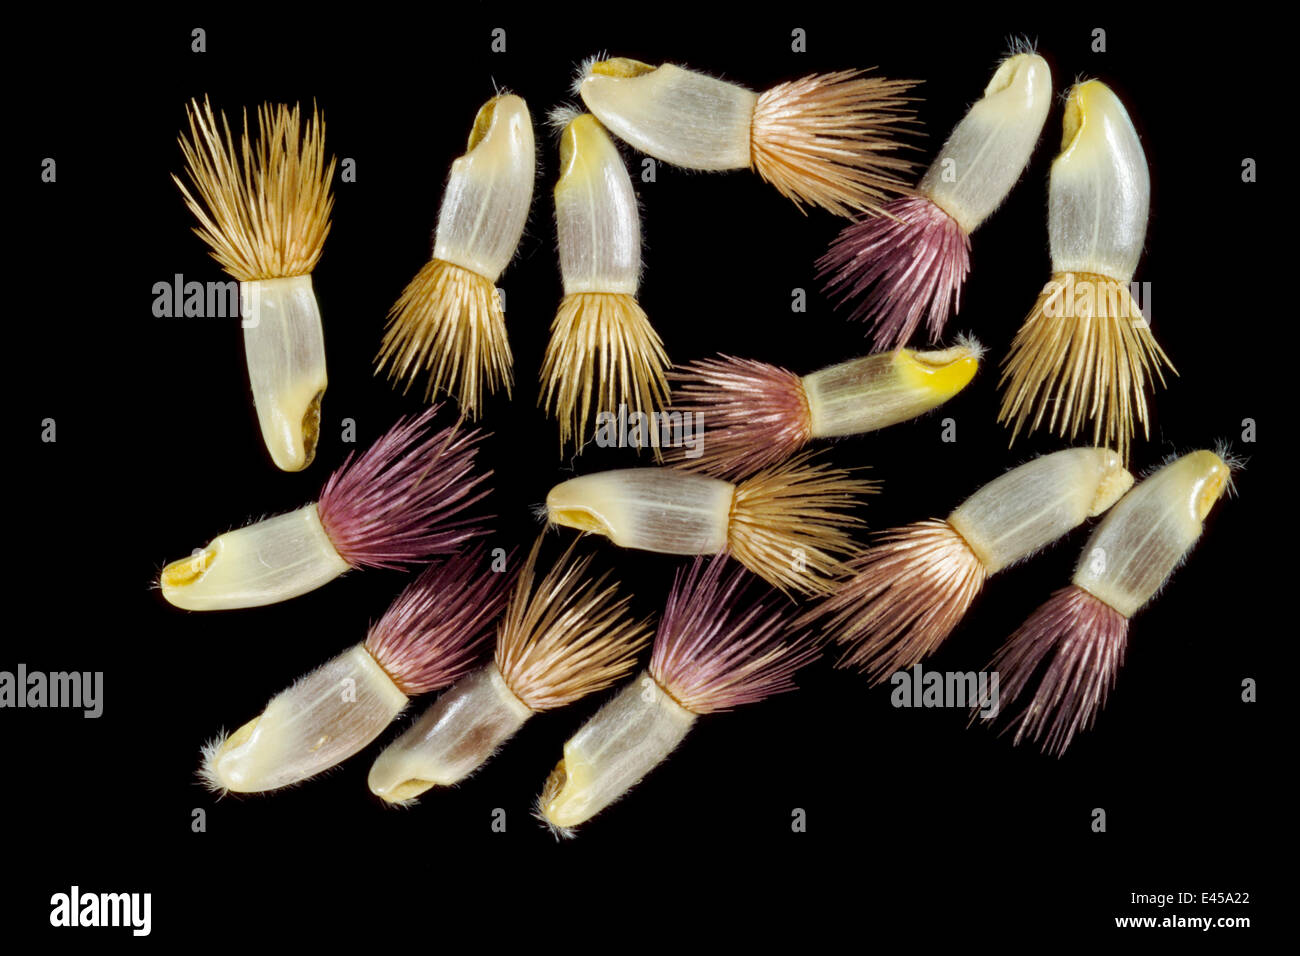 Kornblume (Centaurea Cyanus) Samen. Kornblume Samen werden teilweise durch Ameisen verbreitet und auch tragen eine Büschel von hygroskopischen (wasserabsorbierenden) Fasern, die beim erweitern nass und zurückziehen, wenn trocken, somit eine "crawling" Bewegung über dem Boden fahren. Stockfoto